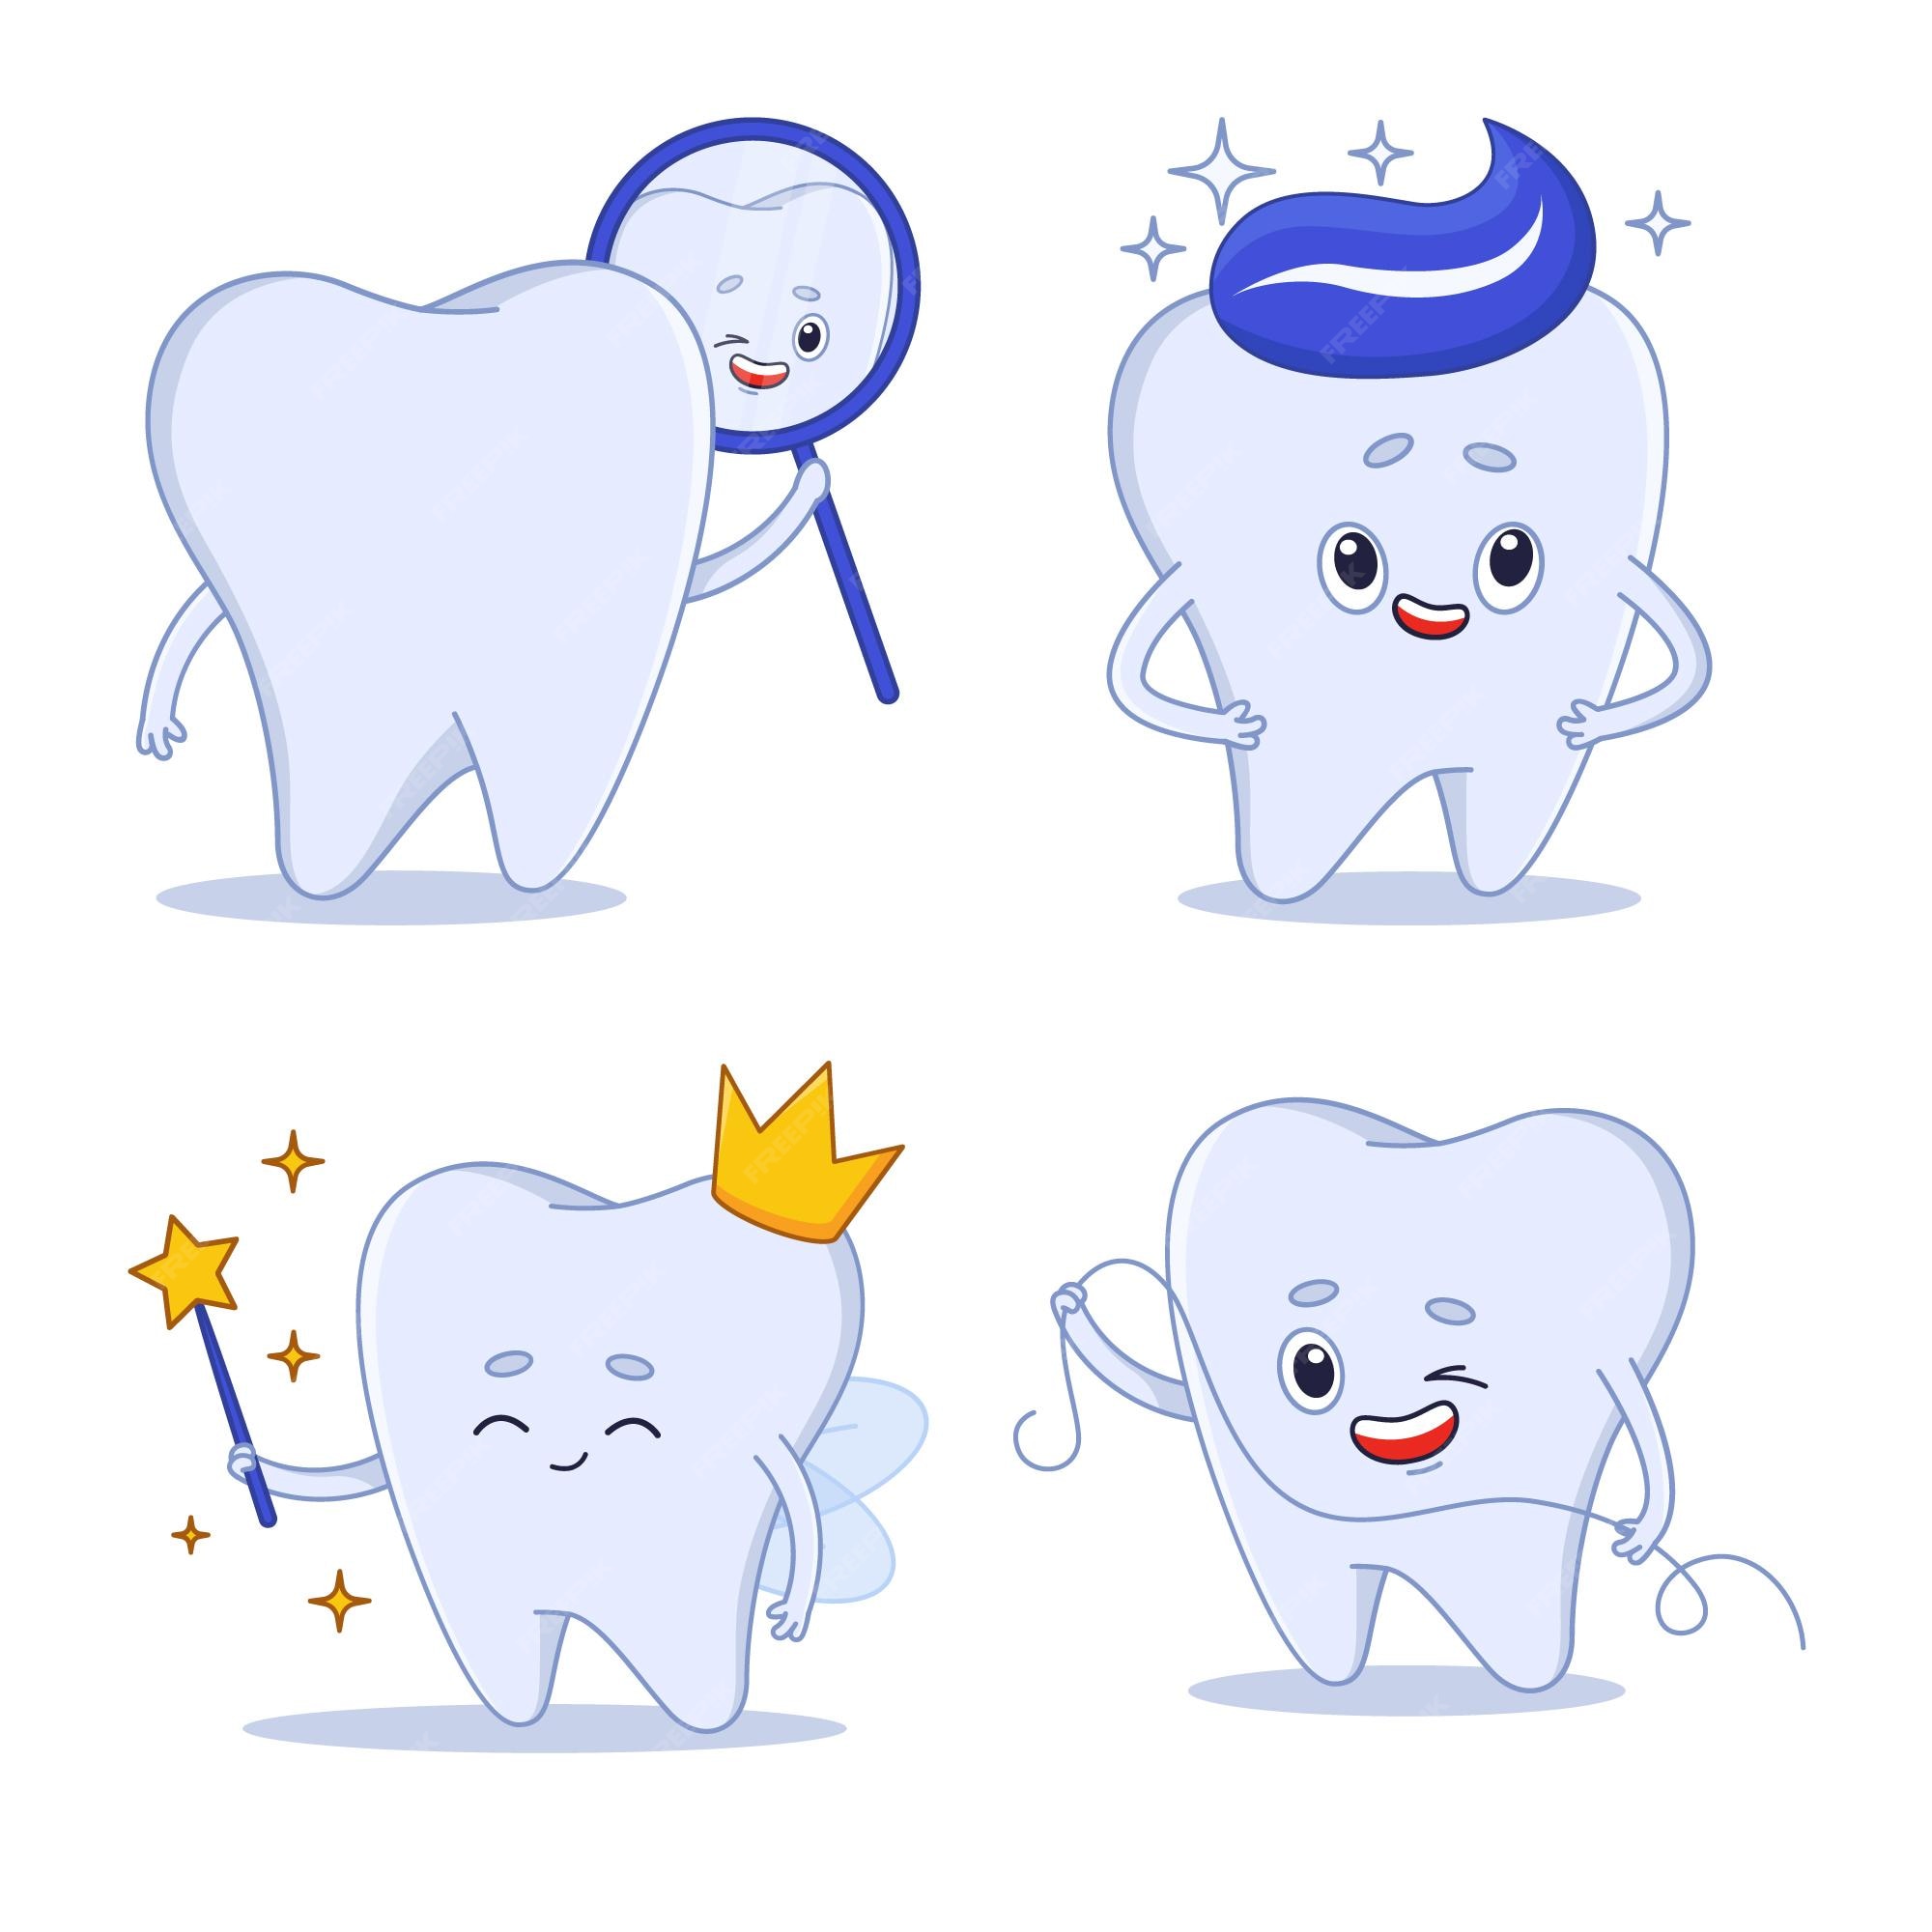 Dental Cartoon Images - Free Download on Freepik